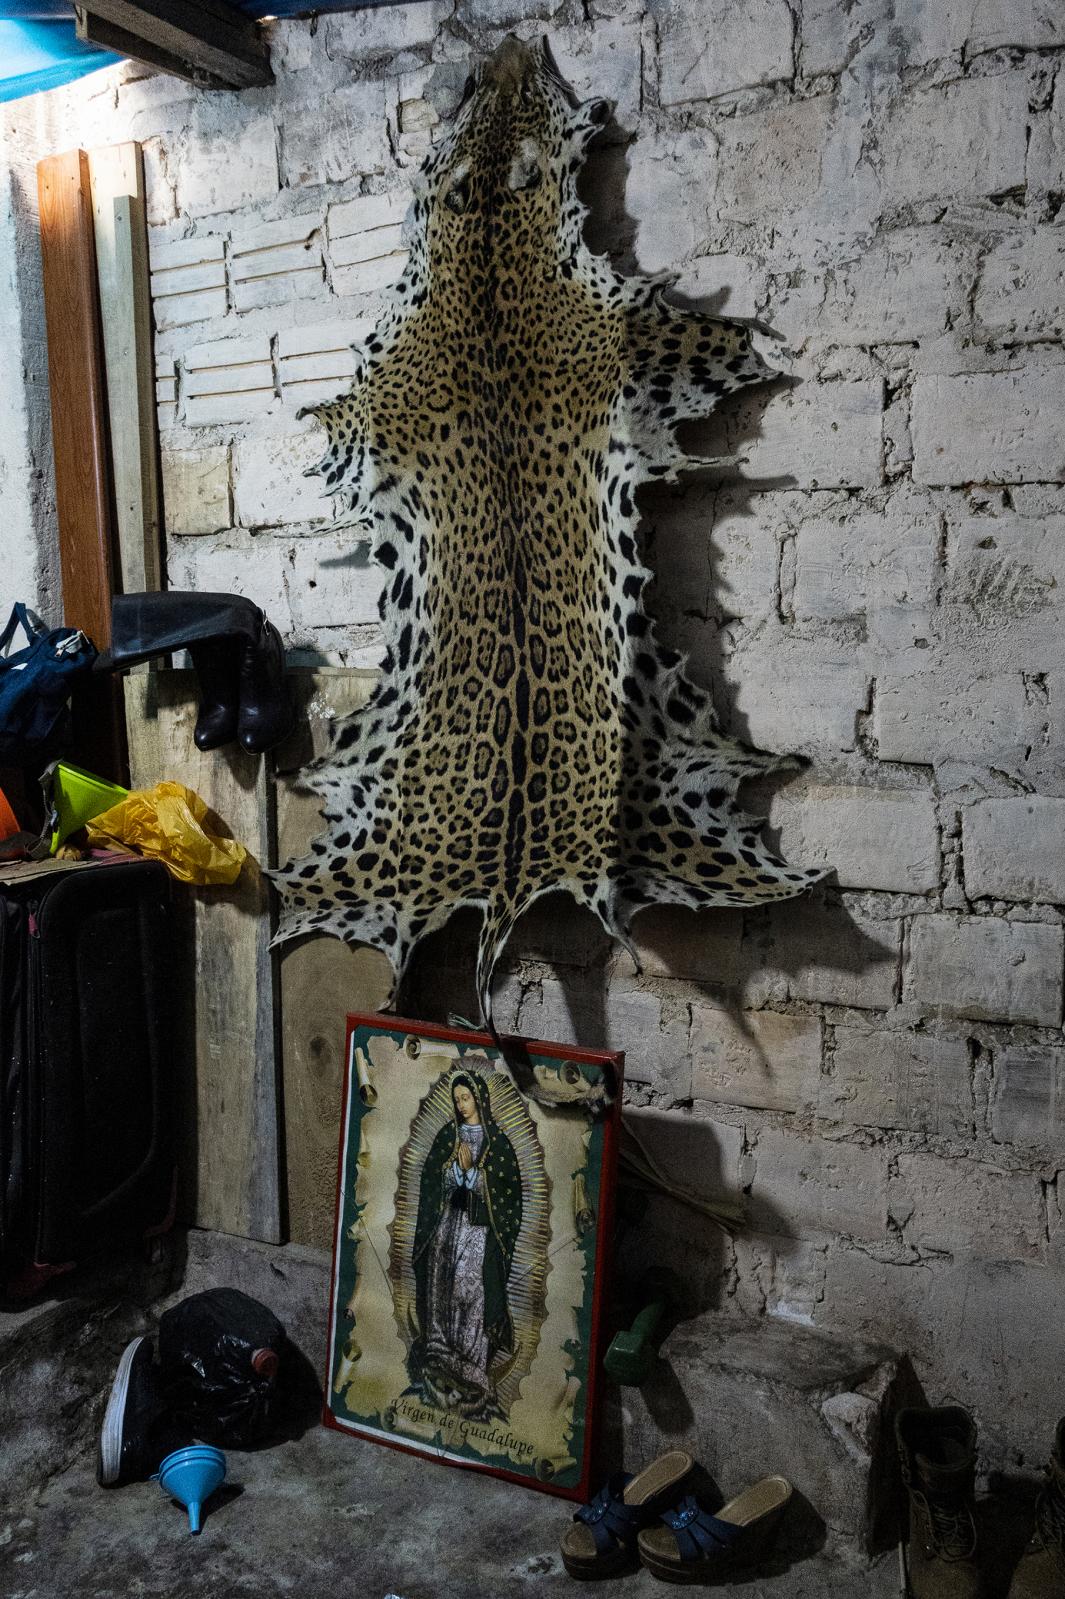 Amazonas ll - A Jaguar skin for sale in a store in the Belen market in...